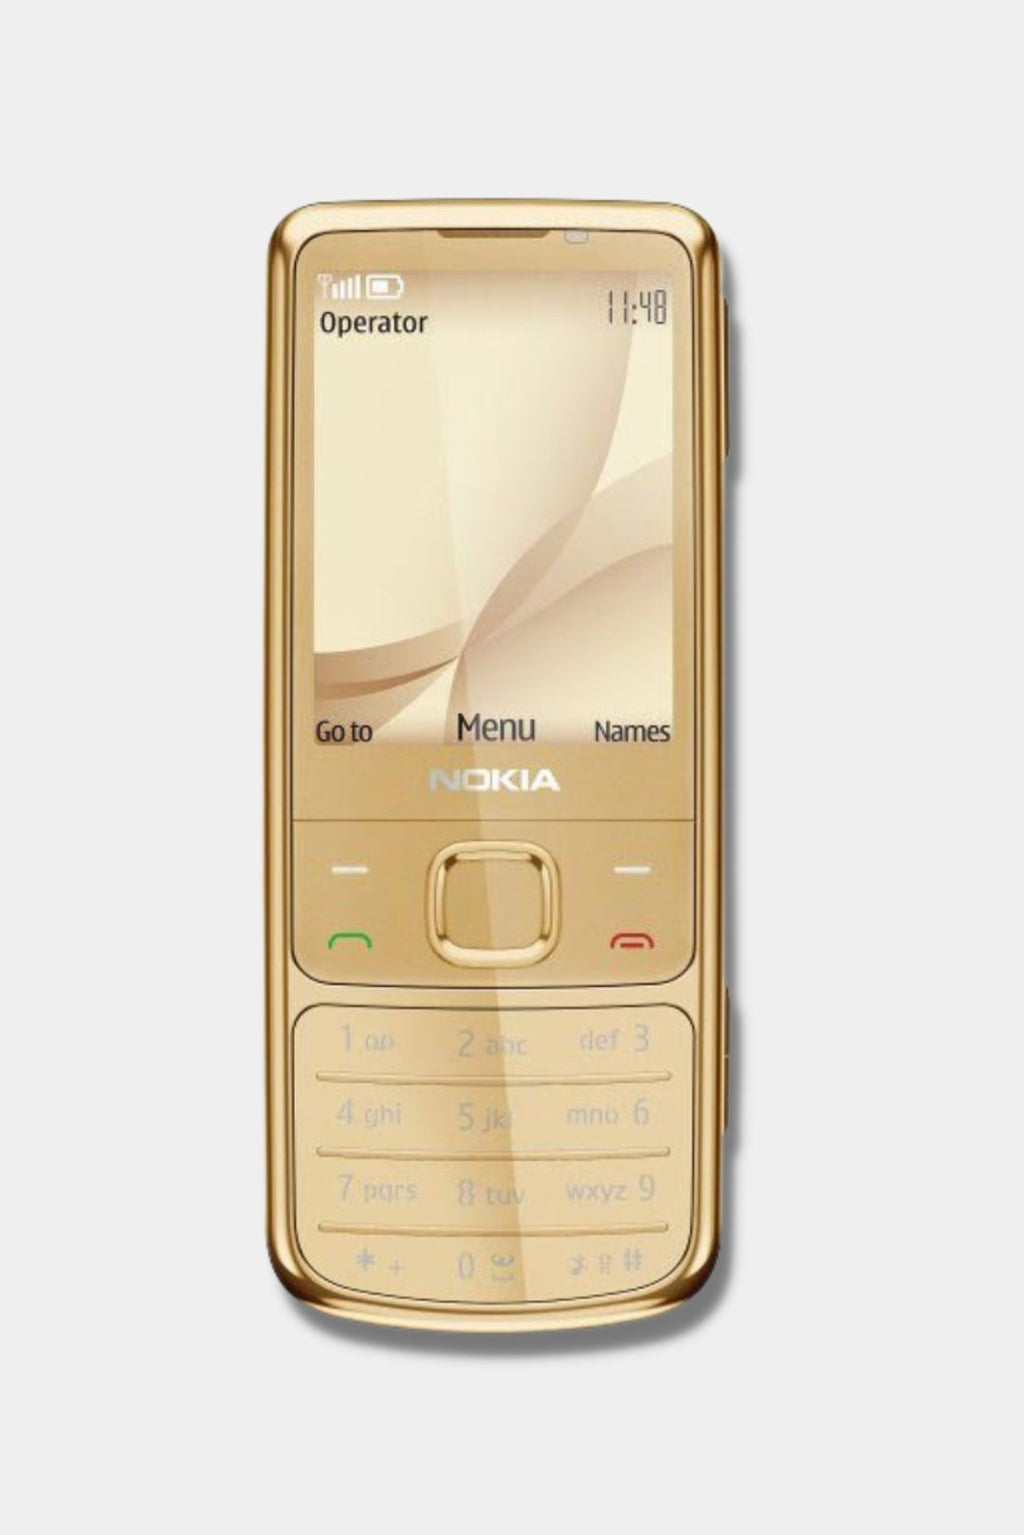 Купить телефон нокиа в спб. Nokia 6700 Gold. Nokia 6700 Classic Gold. Нокиа 6700 золотой. Nokia 6700 Classic Gold Edition.